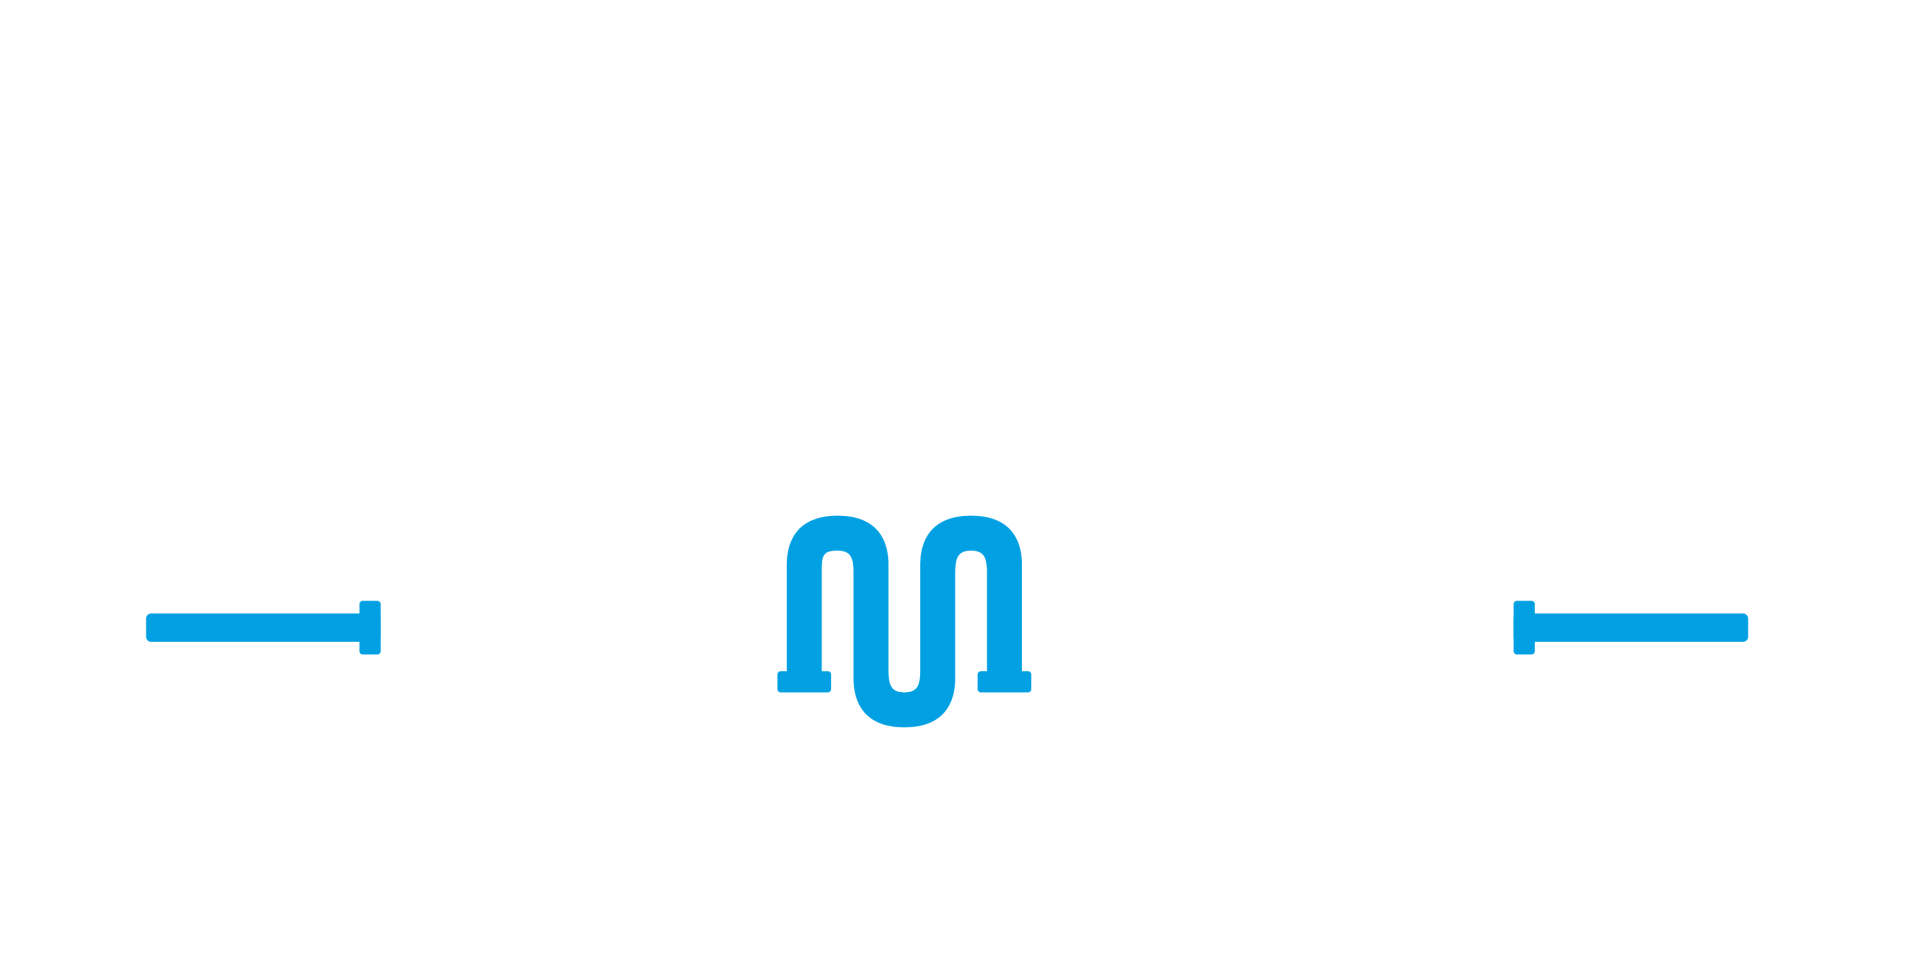 Rose bay plumbing